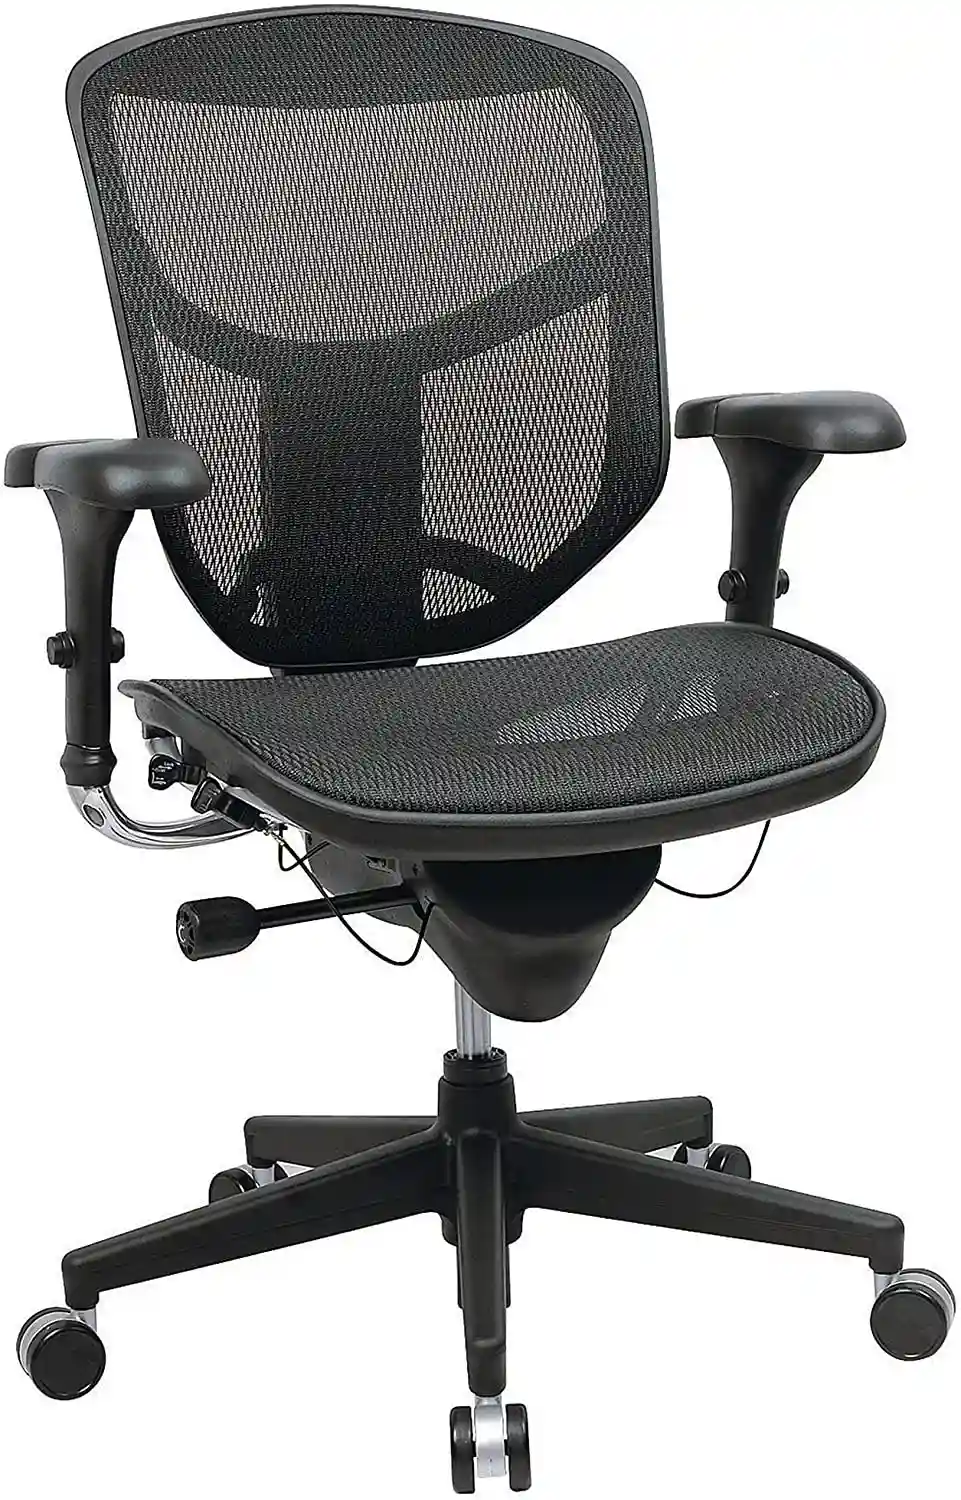 Ticova Ergonomic Office Chair - High Back Desk Chair with Adjustable Lumbar Support, Headrest & 3D Metal Armrest